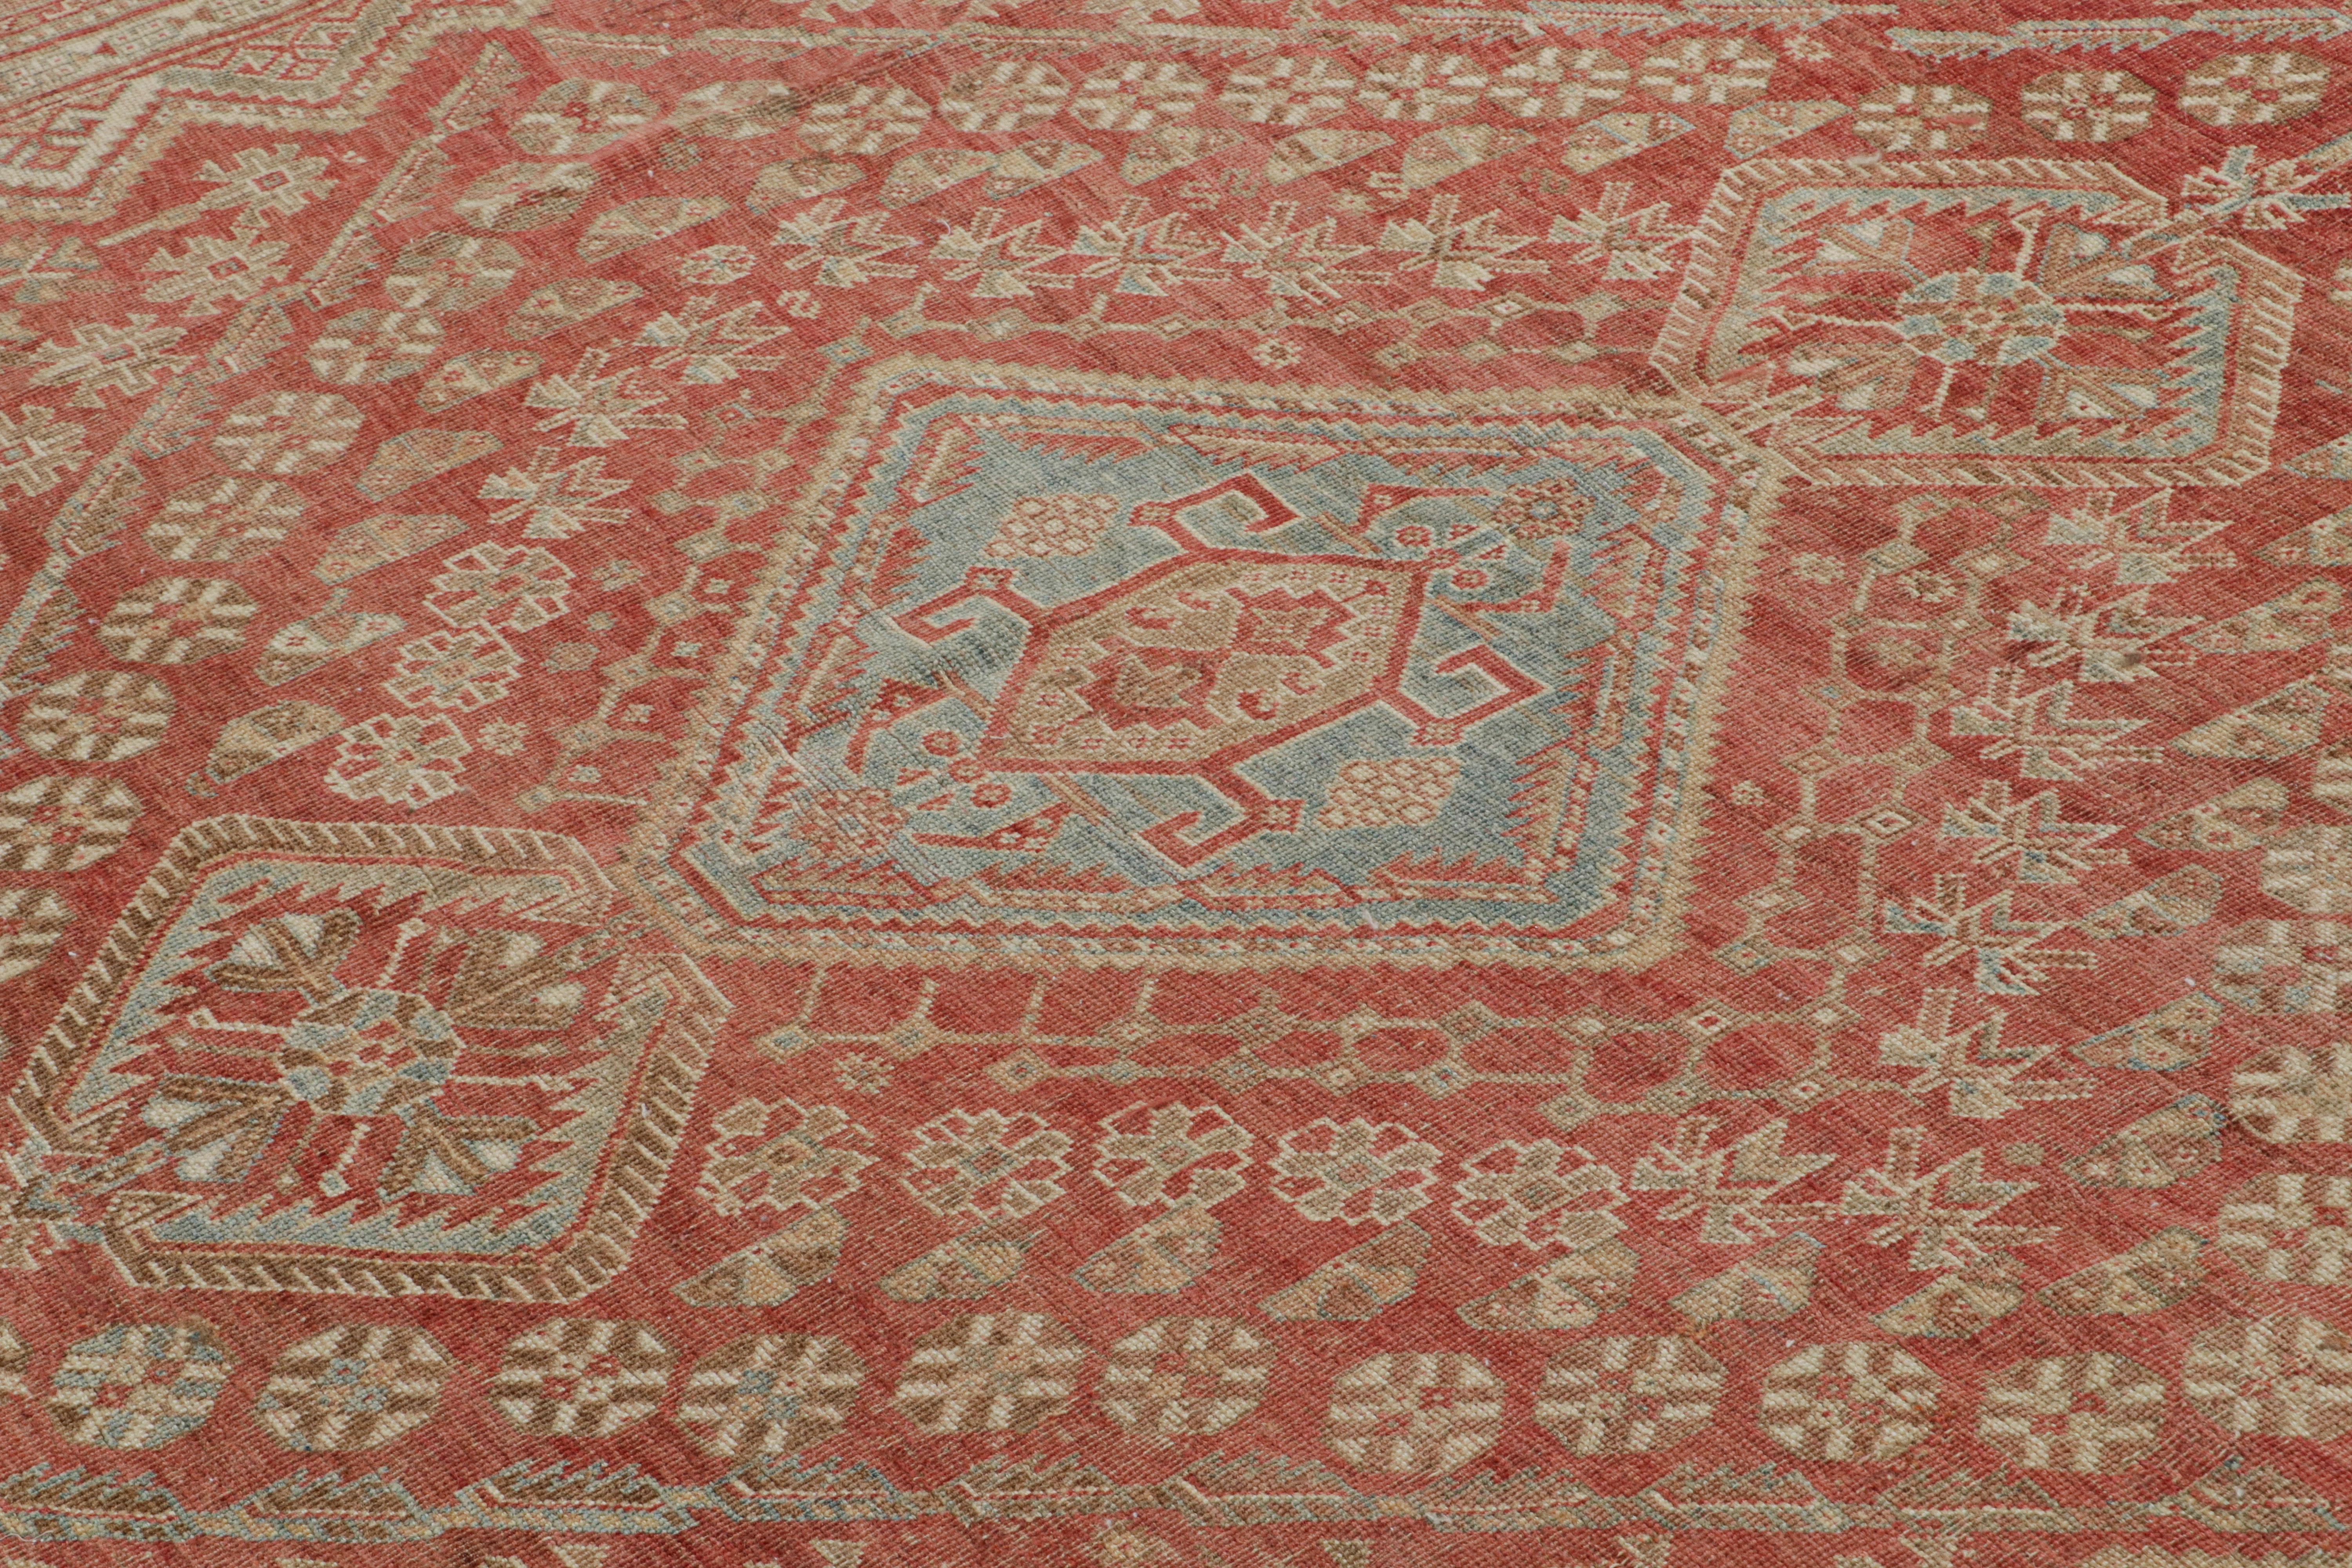 Noué à la main en laine et originaire de Turquie vers 1950-1960, ce tapis vintage 6x9 Ersari provient de la même provenance, une sous-tribu du peuple turkmène, souvent connue pour ses motifs de tapis tribaux plus distincts. 

Sur le Design : 

Les